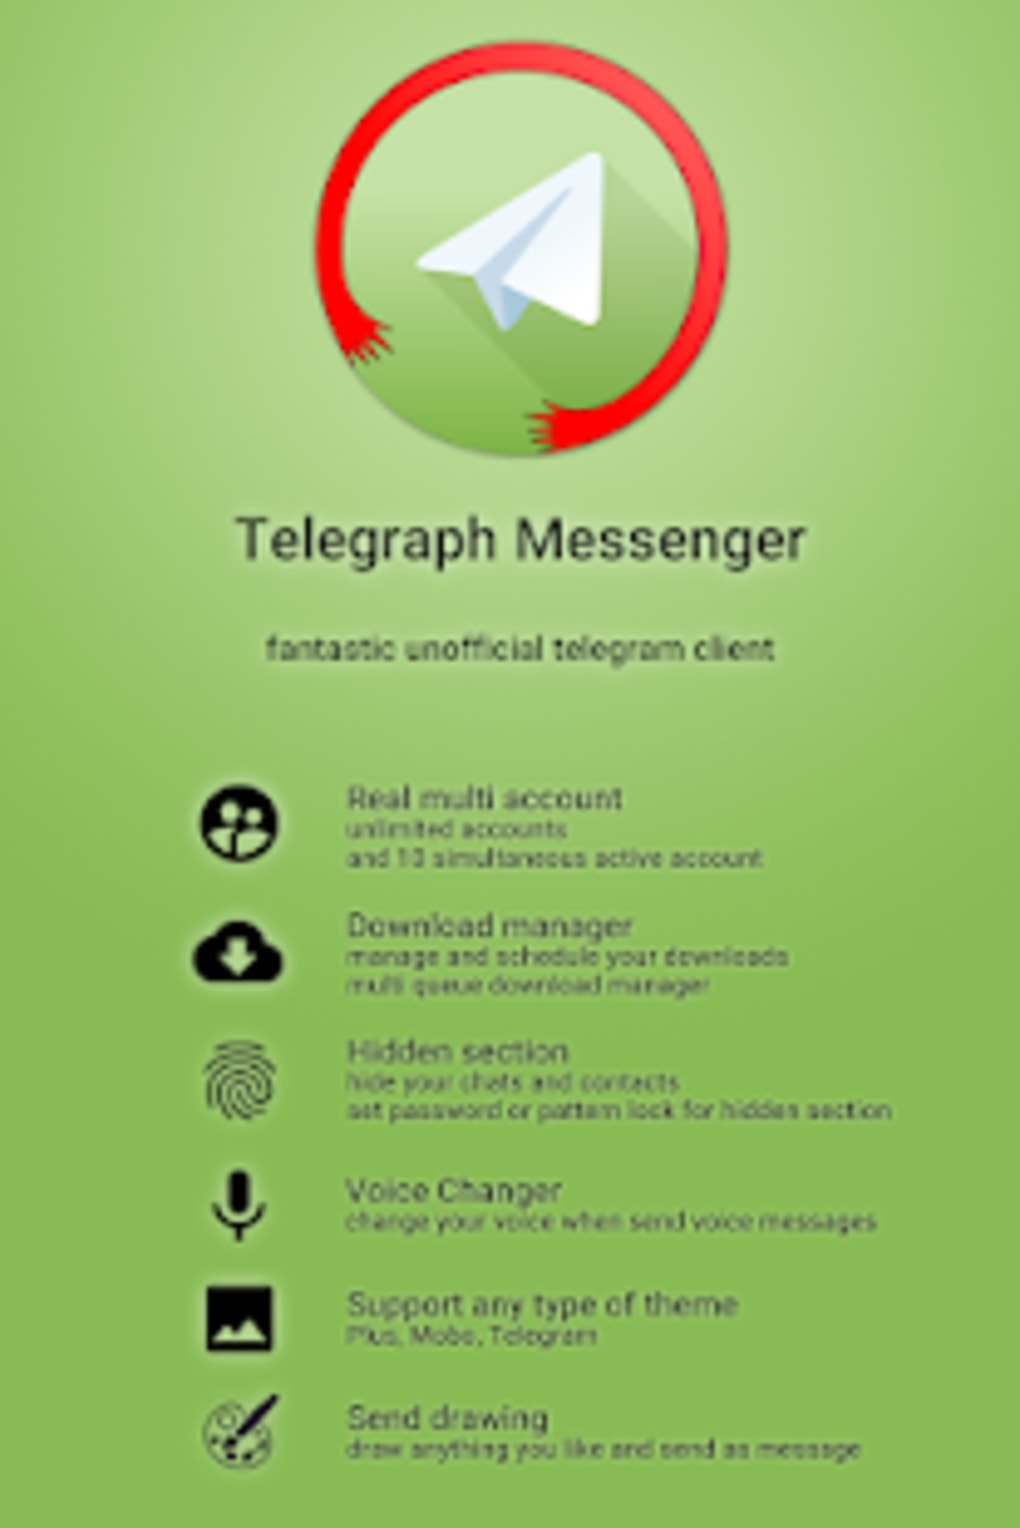 Скачать бесплатно телеграмм на русском языке на телефон андроид фото 53